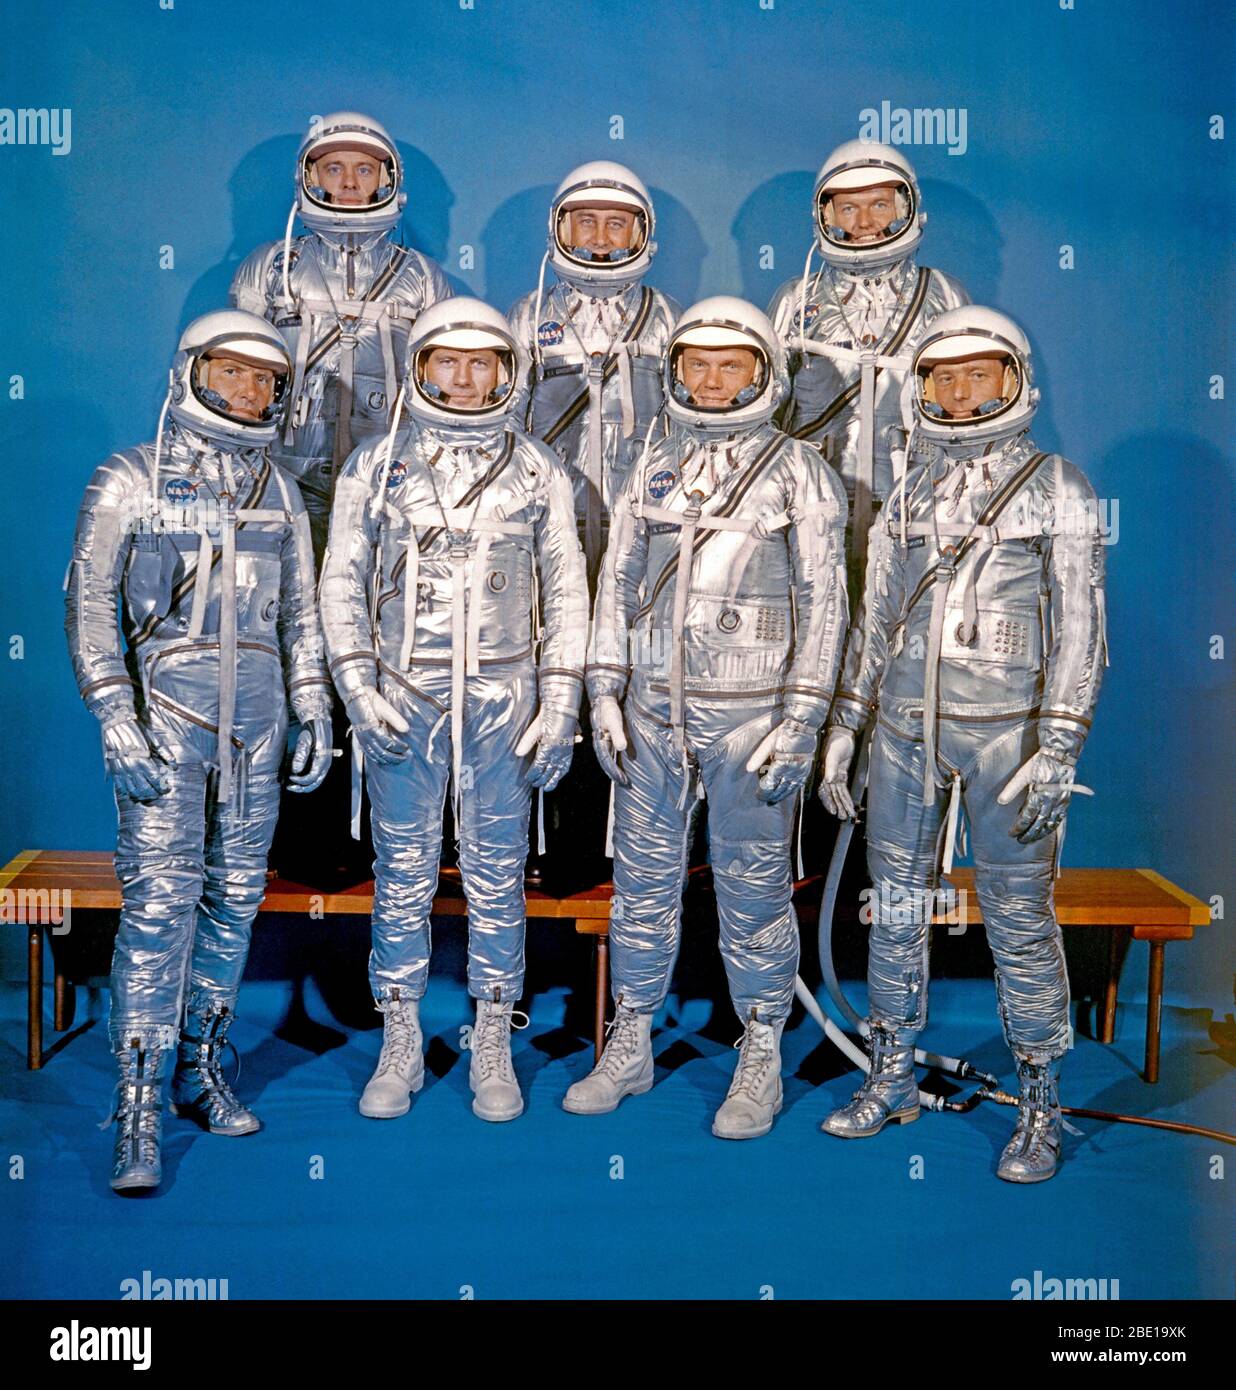 Estos siete hombres, vistiendo trajes espaciales en este retrato, constituyeron el primer grupo de astronautas anunciado por la Administración Nacional de Aeronáutica y del Espacio (NASA). Fueron seleccionados en abril de 1959 para el programa Mercury. Primera fila, de izquierda a derecha, Walter M. Schirra Jr., Donald K. Slayton, John H. Glenn, Jr., y M. Scott Carpenter. Fila de atrás, de izquierda a derecha, Alan B. Shepard Jr., Virgil I. Grissom y L. Gordon Cooper Jr. Foto de stock